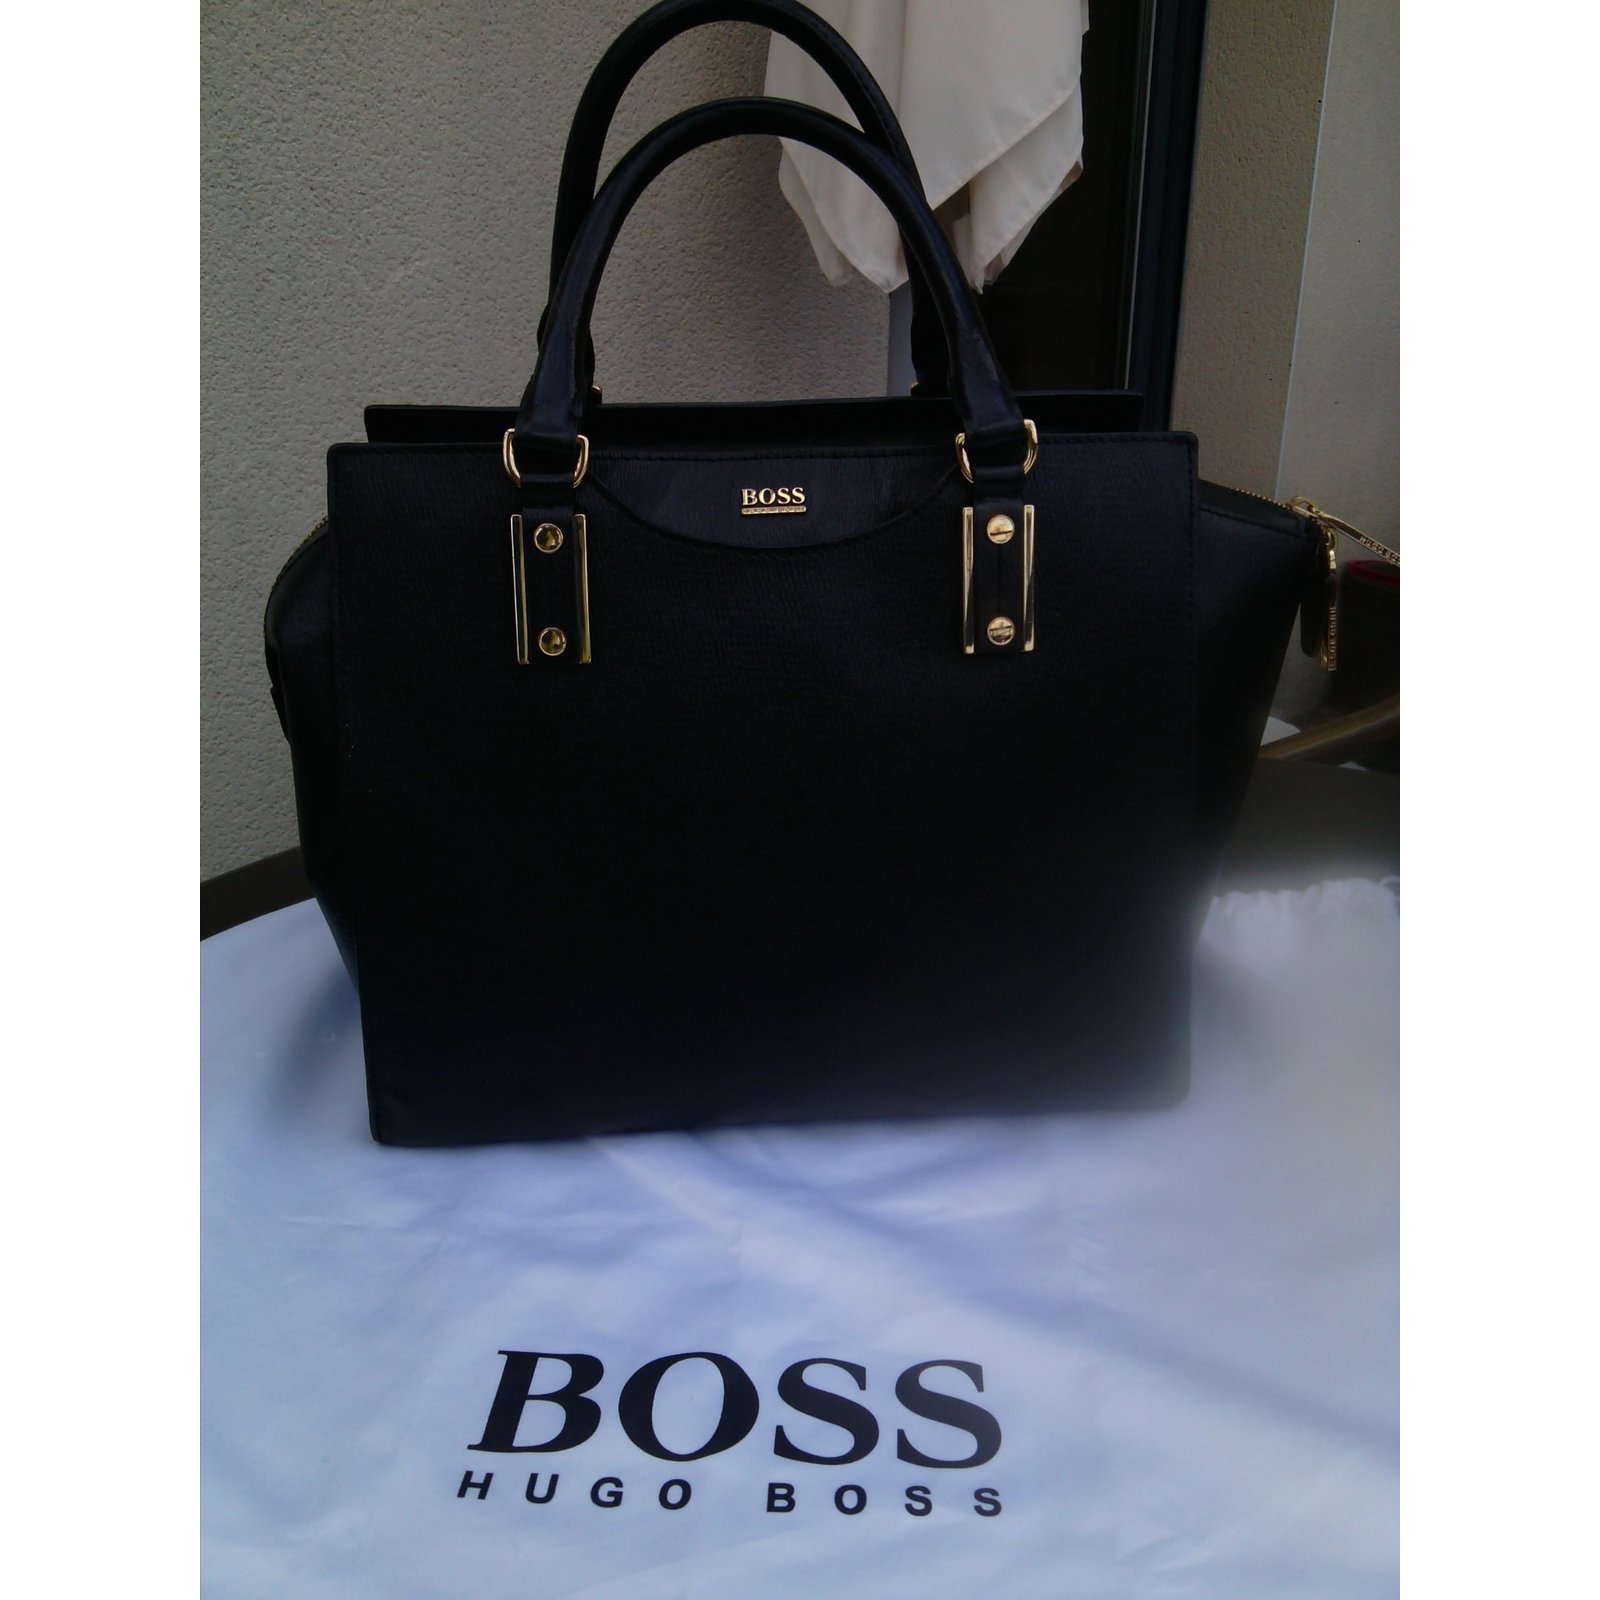 hugo boss handbag